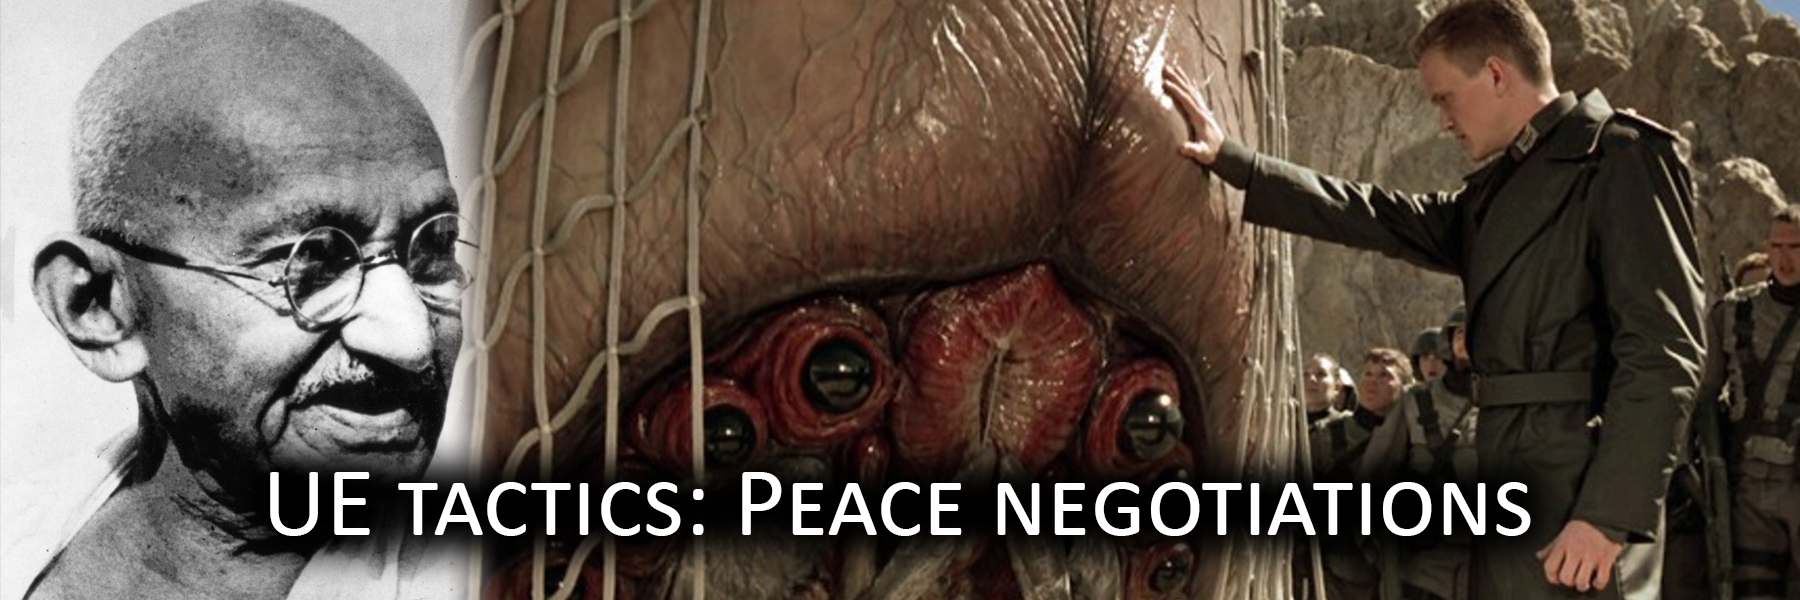 UE Tactics: Peace negotiations